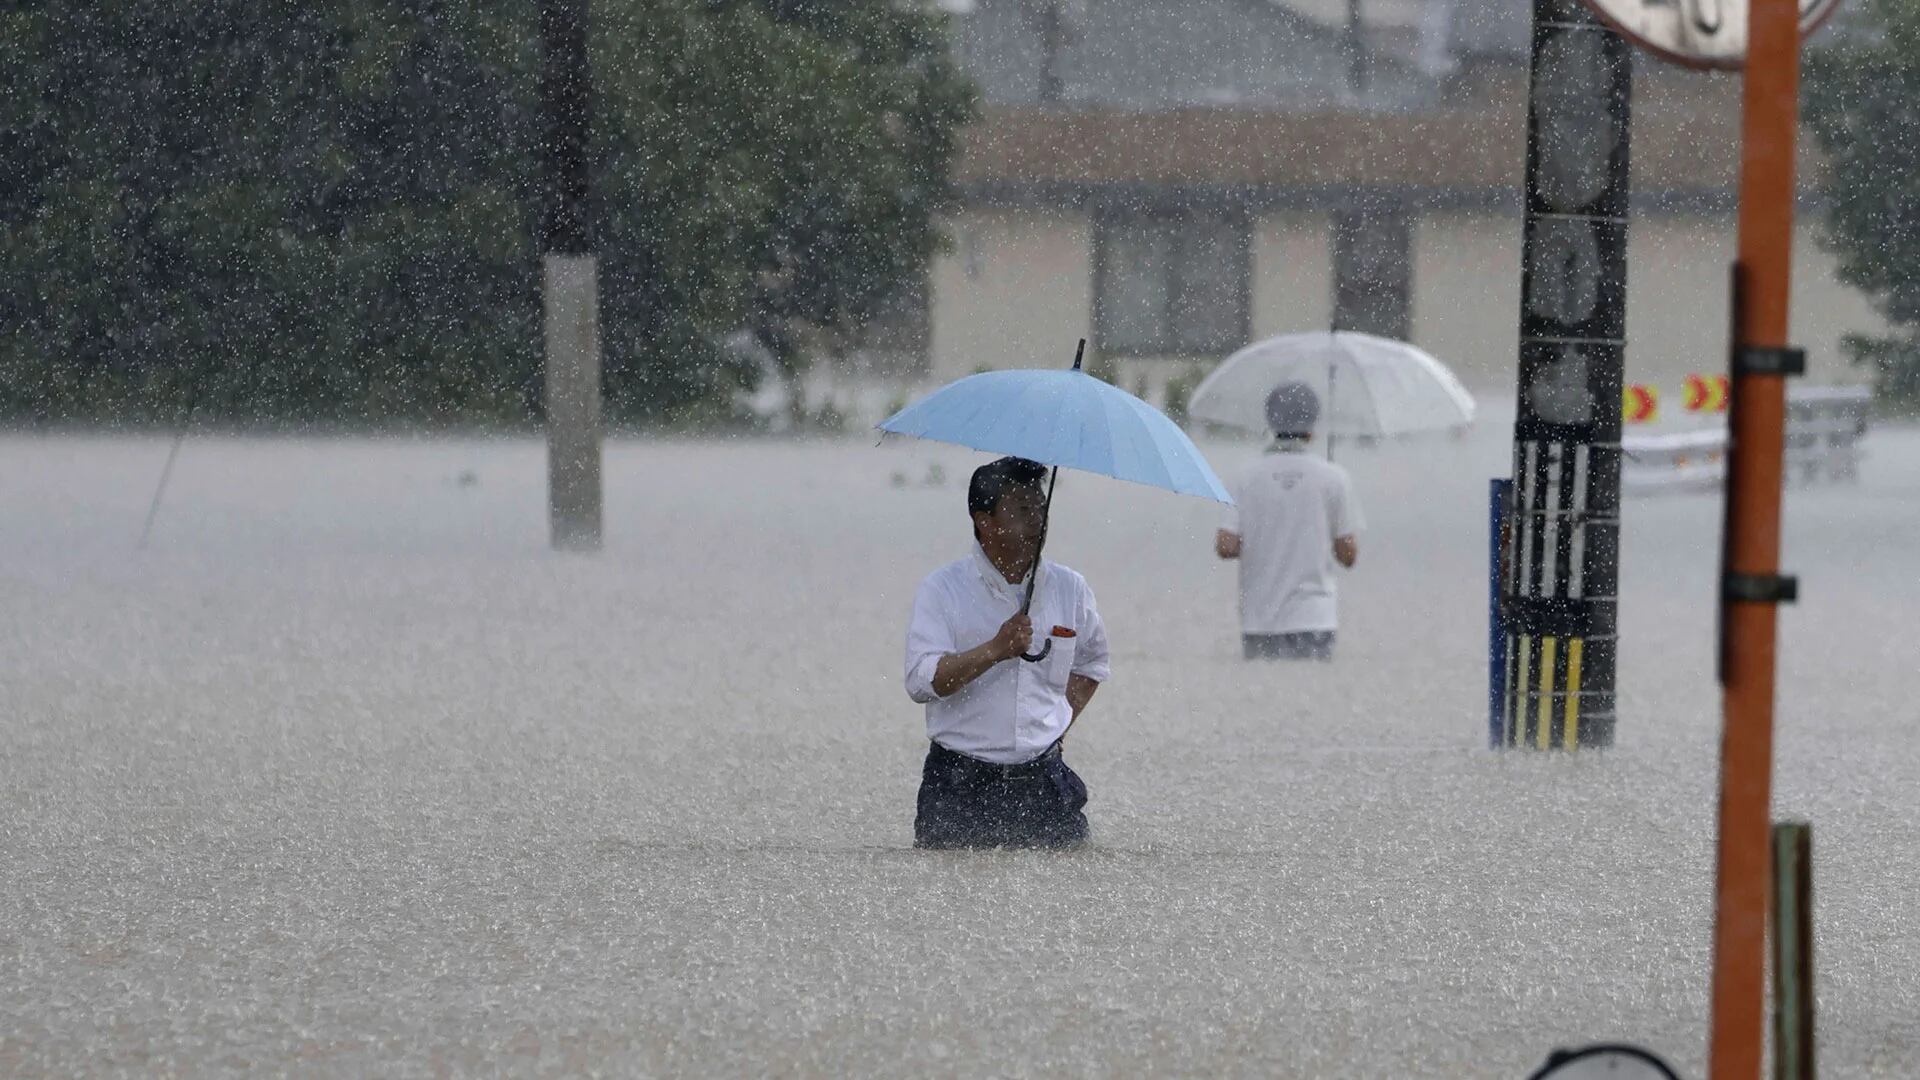 La gente camina por una calle debido a una fuerte lluvia en Kurume, prefectura de Fukuoka, sur de Japón, el lunes 10 de julio de 2023. Los científicos han advertido durante mucho tiempo que se esperan lluvias más extremas en un mundo que se calienta. (Noticias de Kyodo vía AP)